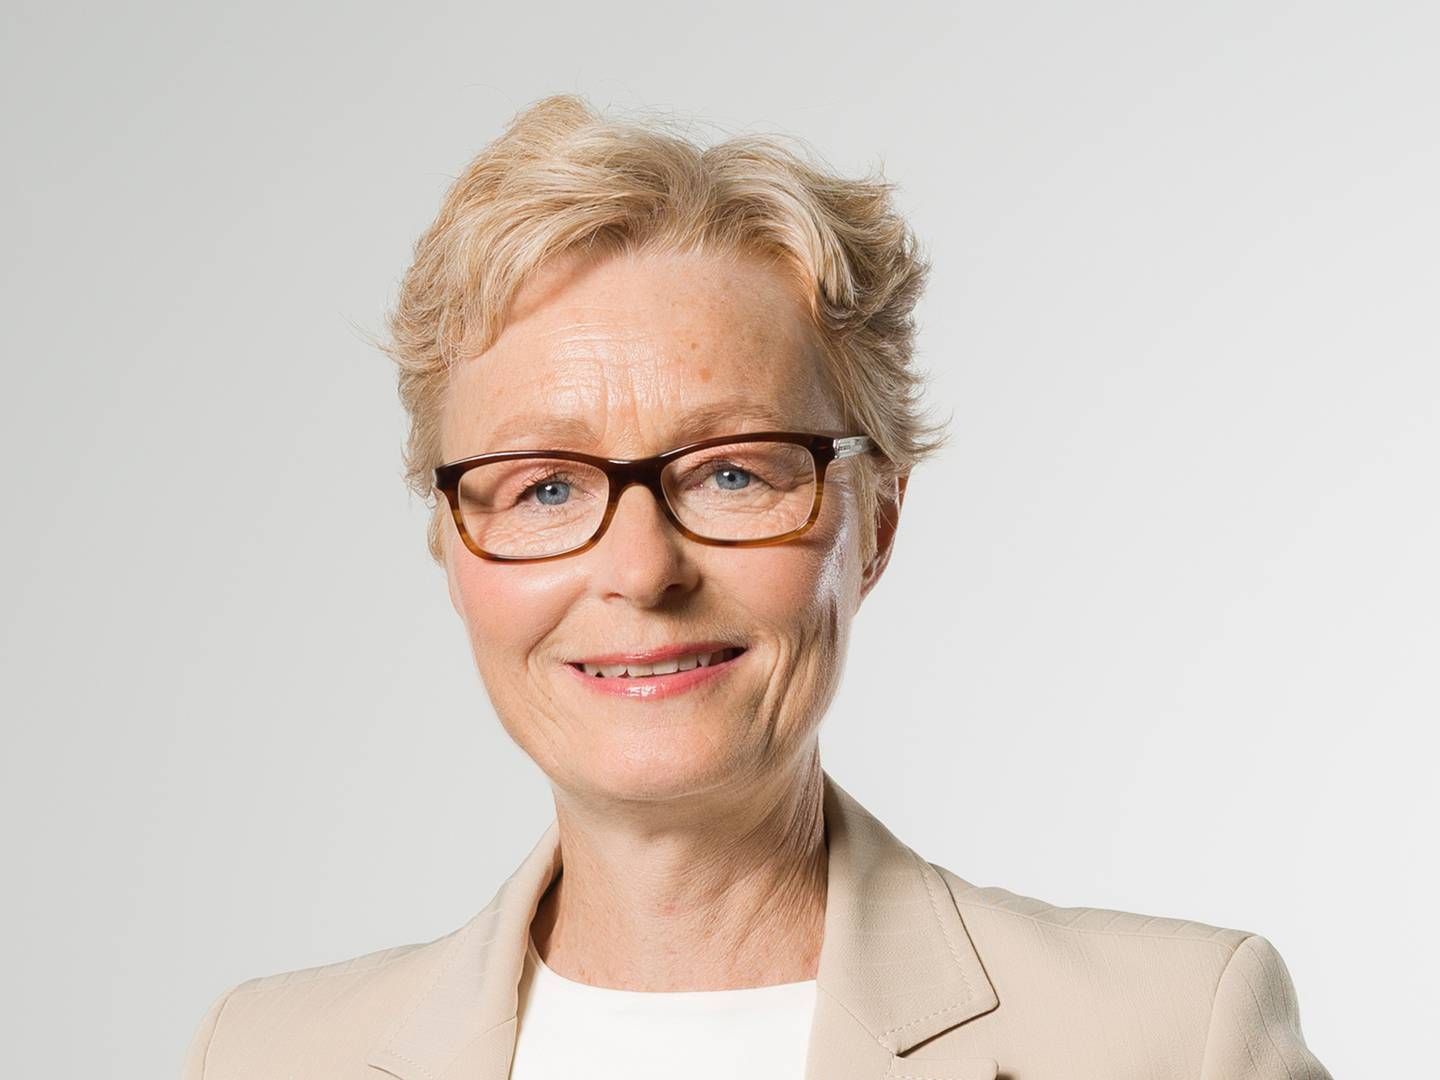 Senior porteføjeforvalter Inger Söderbom i Pensionsmyndigheten trekker 11 milliarder svenske kroner ut av Storebrands svenske fondsvirksomhet. | Foto: Pensionsmyndigheten/pr